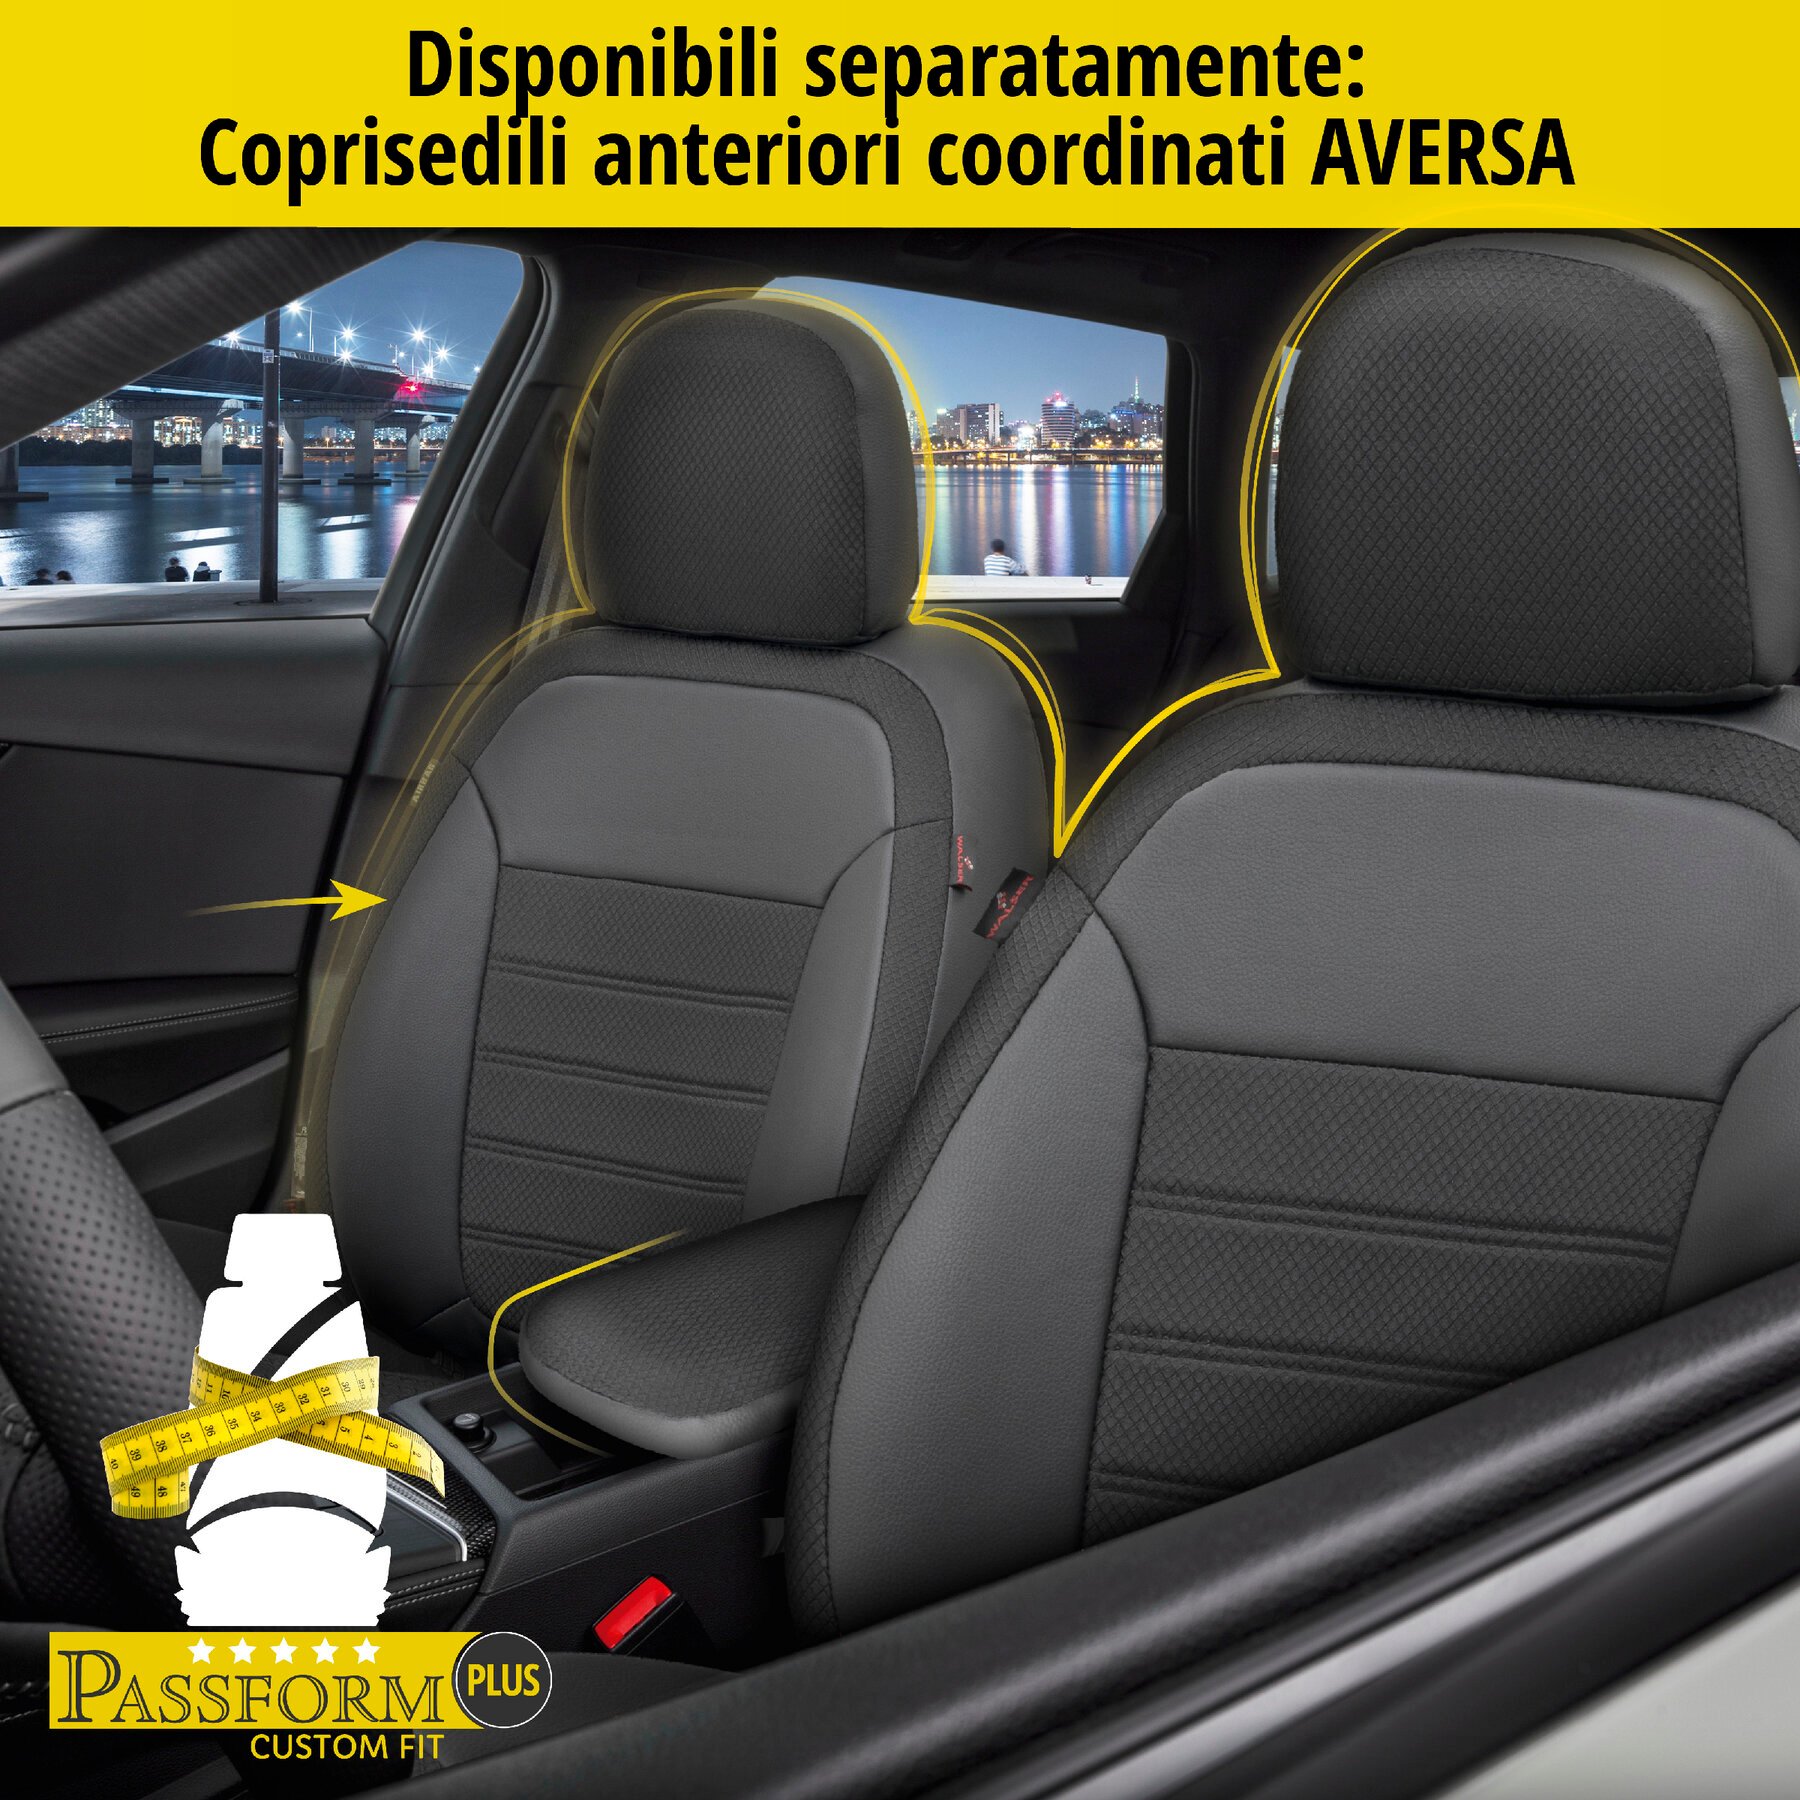 Coprisedili Aversa per Audi A4 Avant (8K5, B8) 11/2007-12/2015, 1 coprisedili posteriore per sedili sportivi